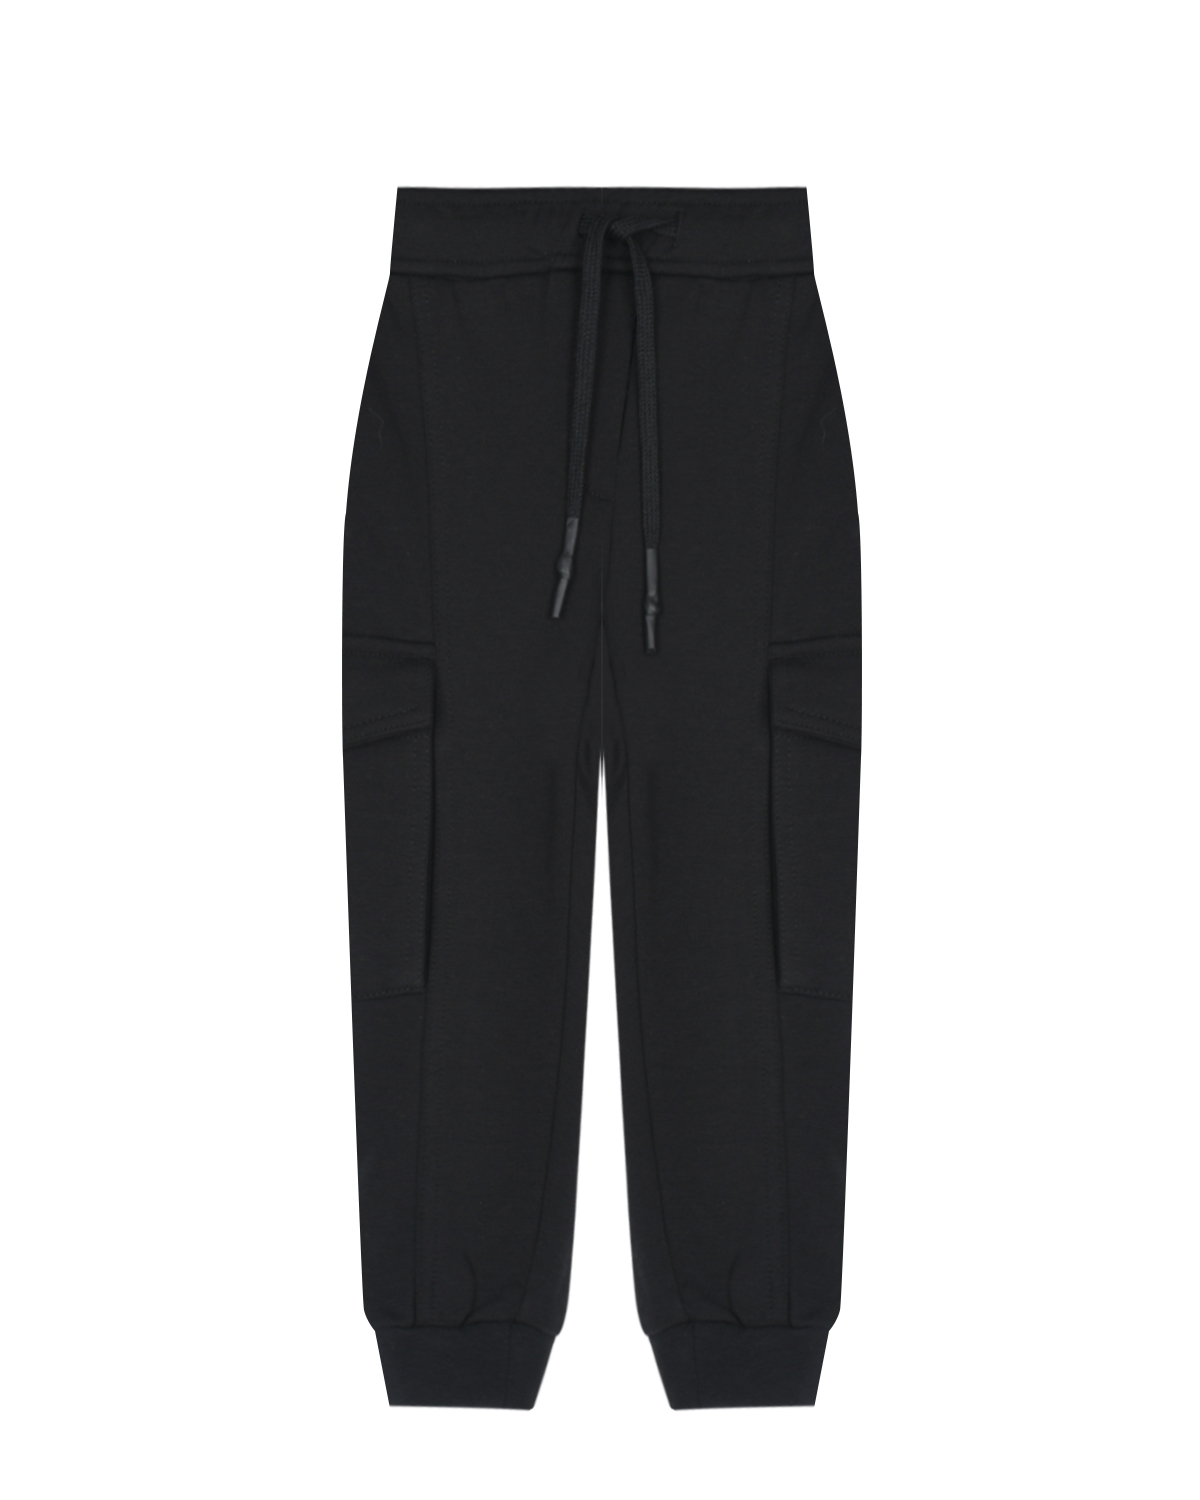 Спортивные черные брюки с накладными карманами Antony Morato детские, размер 116, цвет черный - фото 1